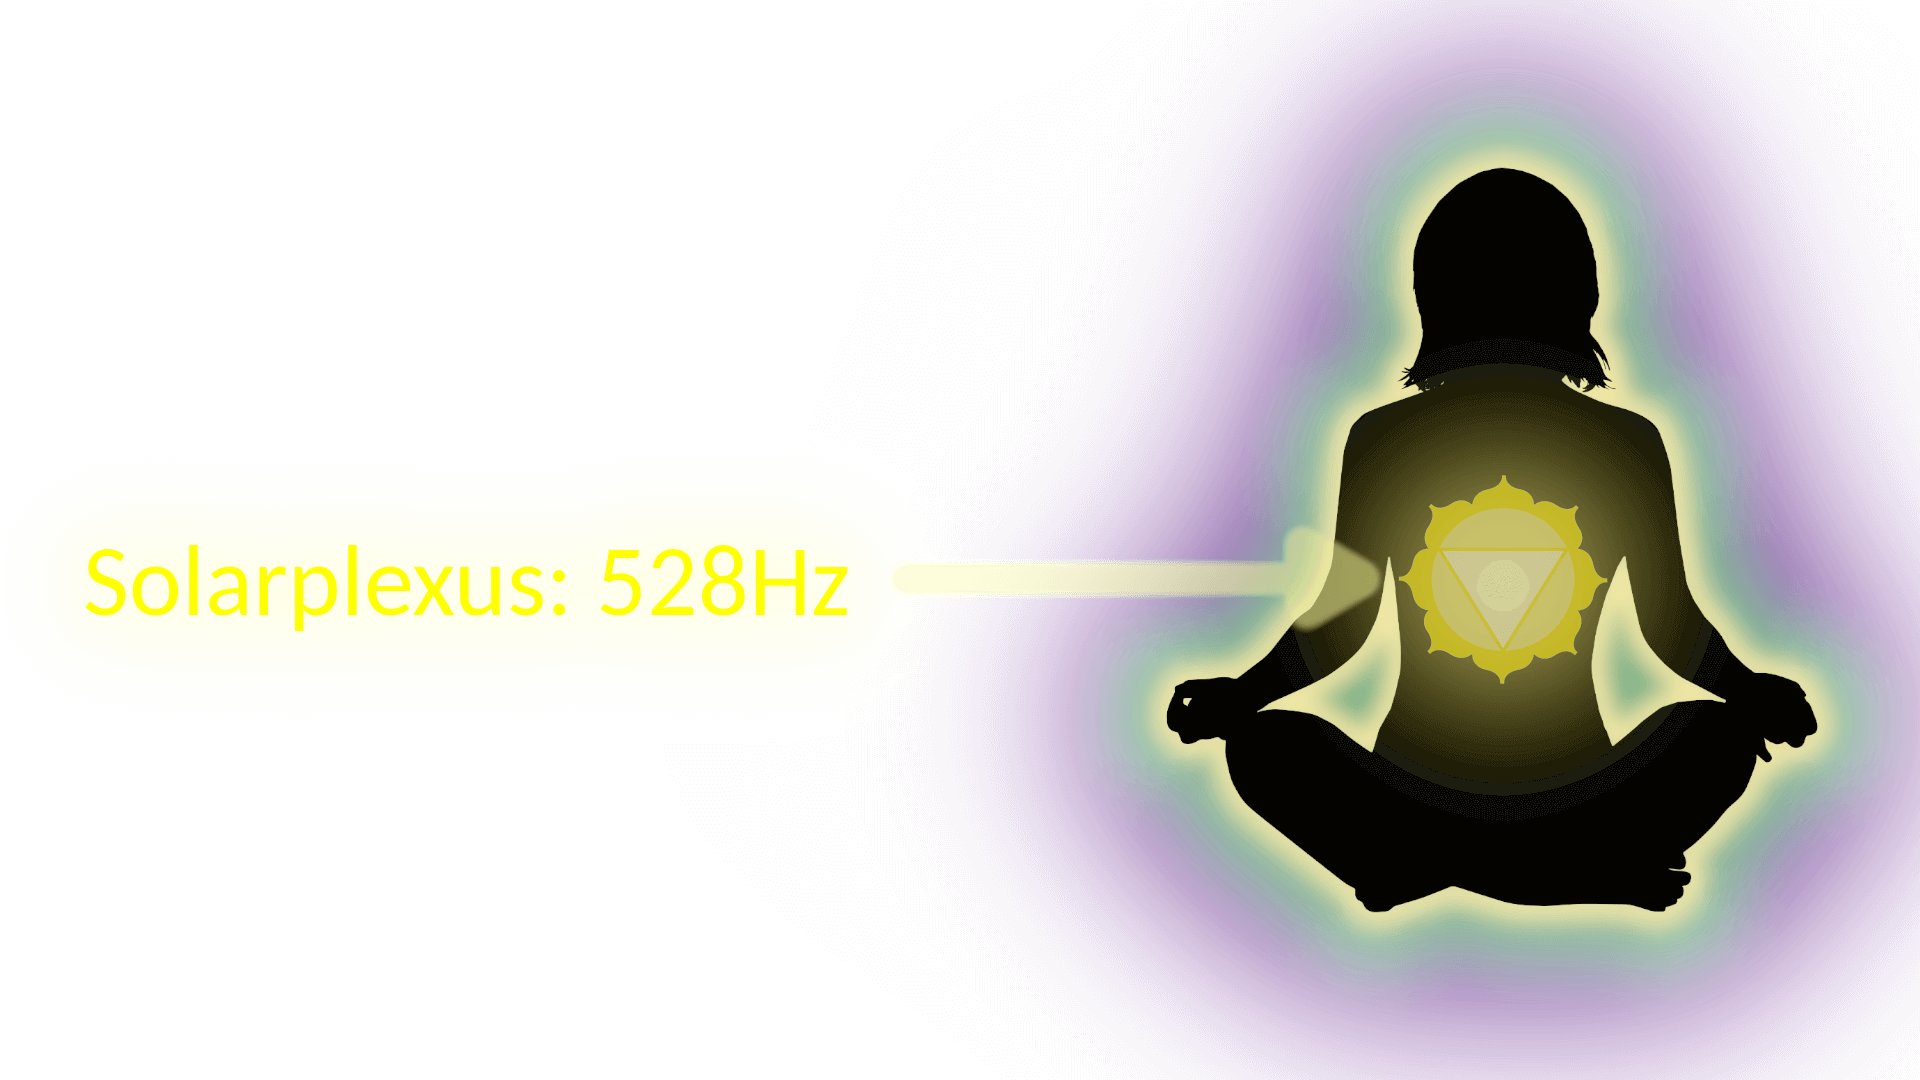 Bild von einer Frau, die meditiert, eine gelbe Markierung zeigt, wo das Solarplexus Chakra (528Hz) ist. Solfeggio Frequenzen